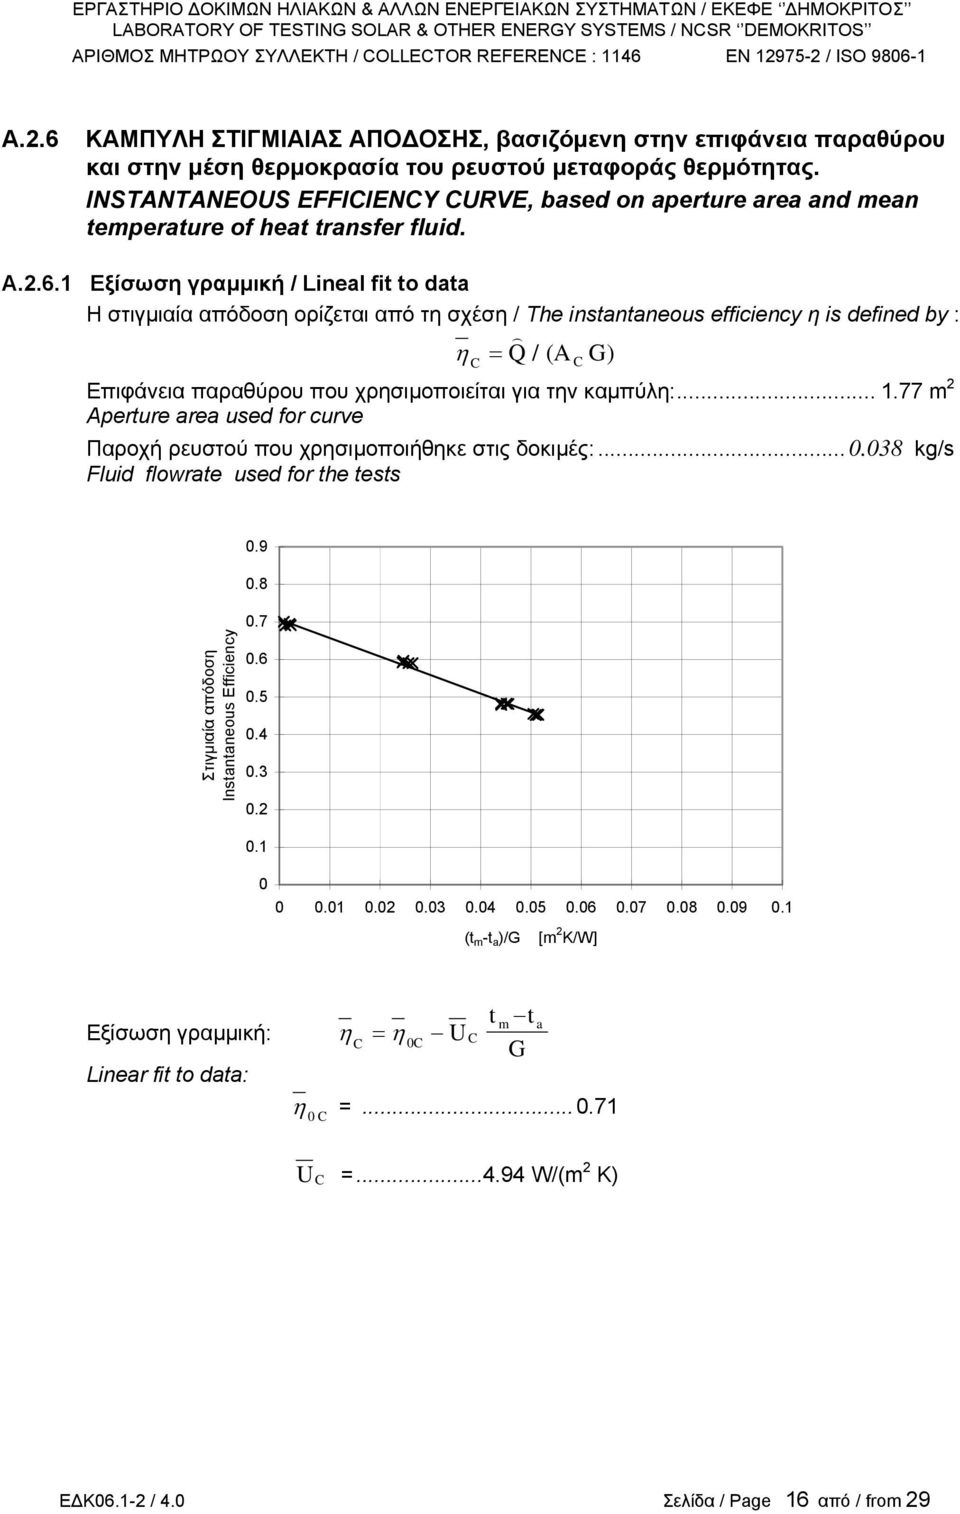 1 Εξίσωση γραµµική / Lineal fi o daa Η στιγµιαία απόδοση ορίζεται από τη σχέση / The insananeous efficiency η is defined by : = Q/(A ) C ) η C Επιφάνεια παραθύρου που χρησιµοποιείται για την καµπύλη:.